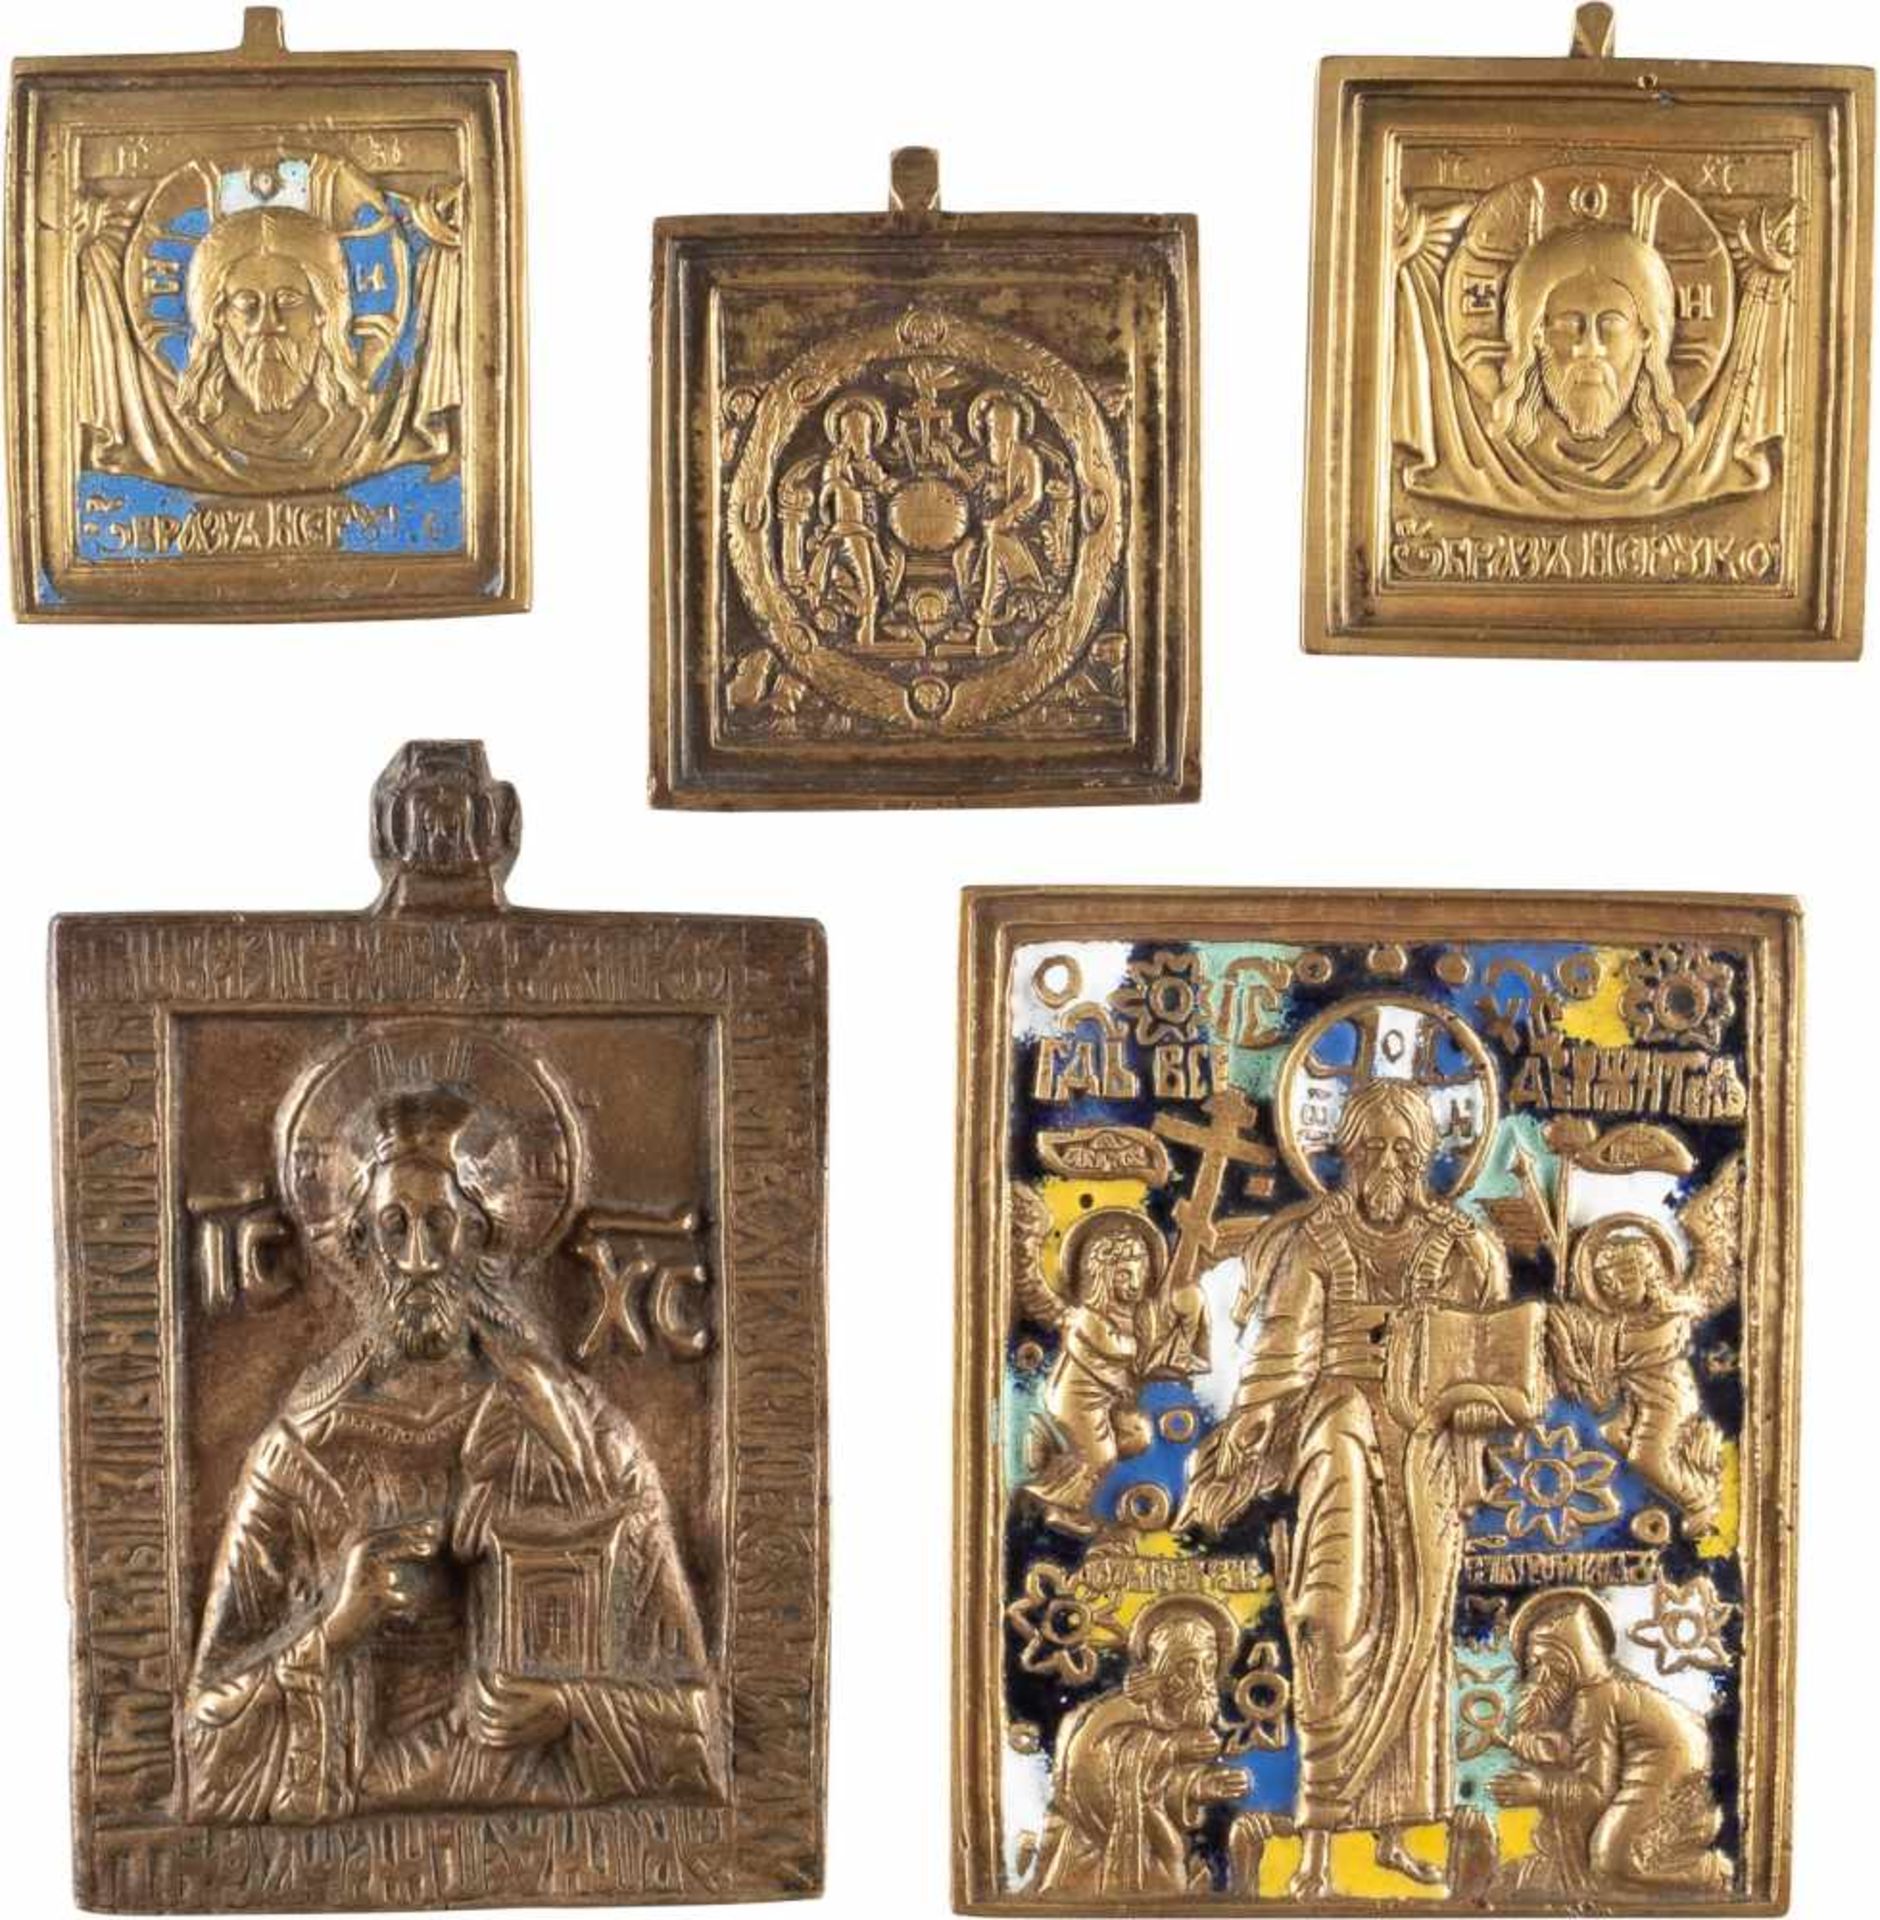 DATIERTE IKONE MIT CHRISTUS PANTOKRATOR SOWIE VIER BRONZE-IKONEN Russland, eine Ikone datiert